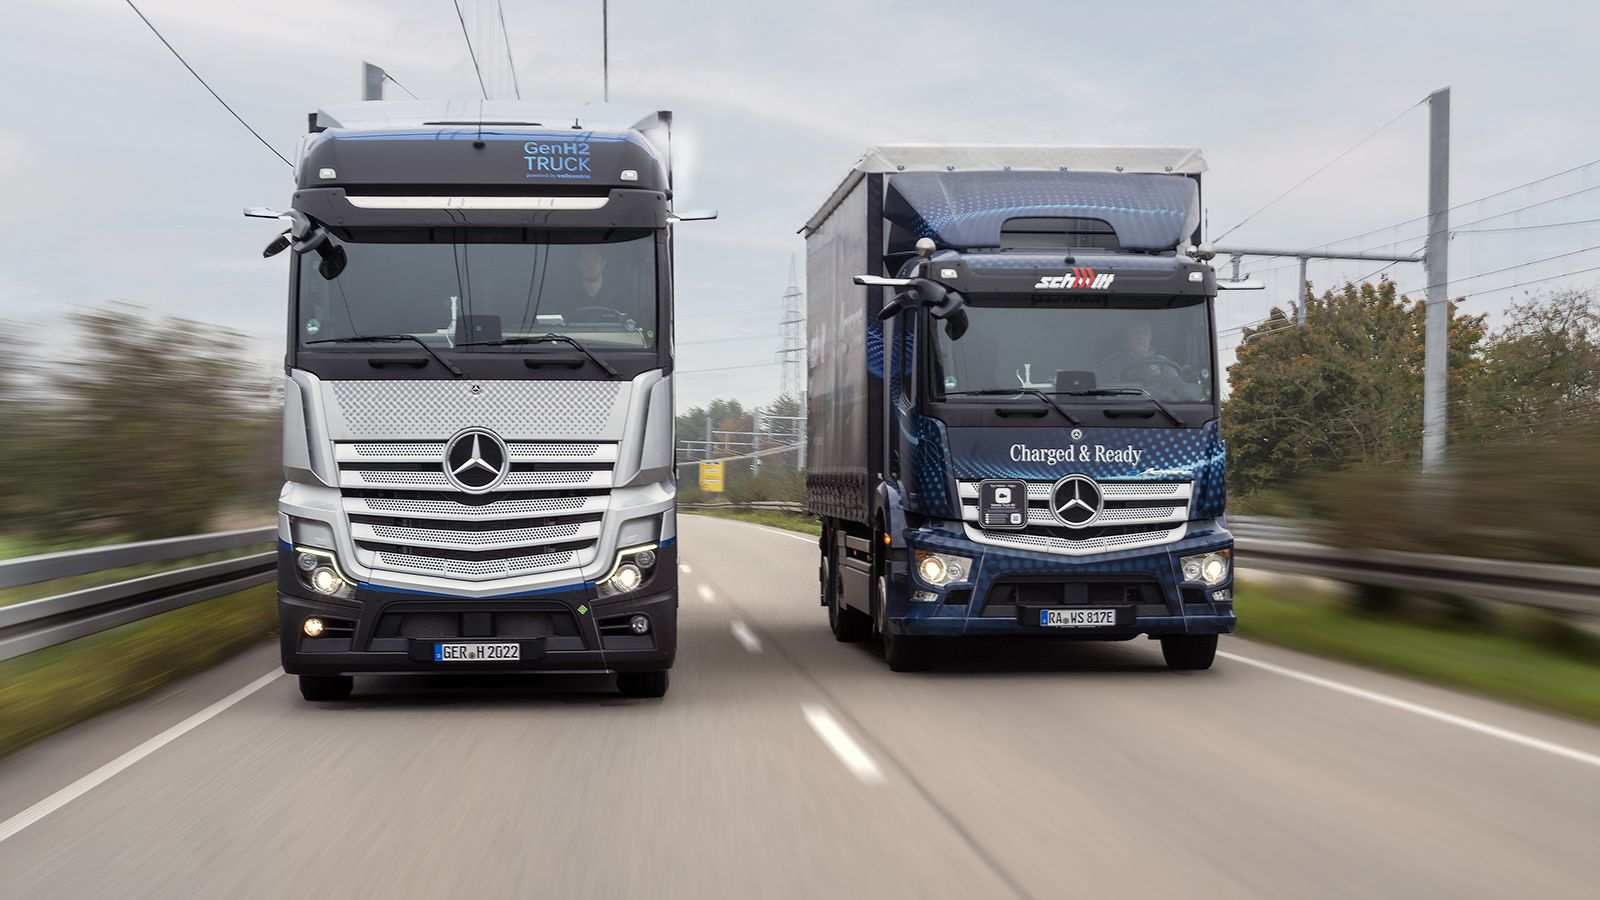 Σε αυτοκινητόδρομους της Γερμανίας ξεκίνησε να δοκιμάζεται το υδρογονοκίνητο Mercedes-Benz GenH2 Truck.